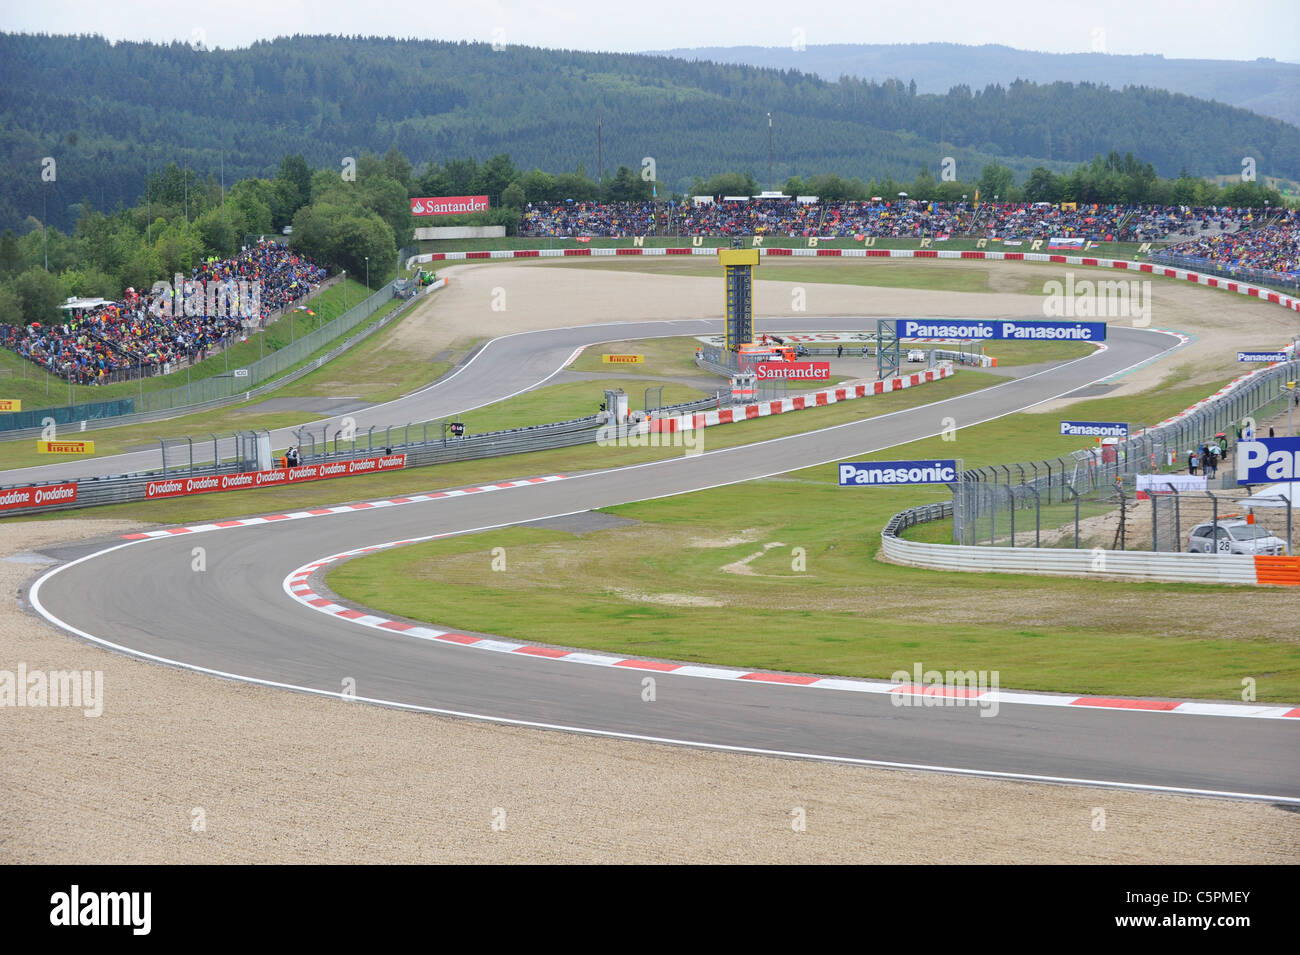 La courbe Dunlop au Nürburgring racetrack au cours de la German Grand Prix de Formule 1 2011 Banque D'Images